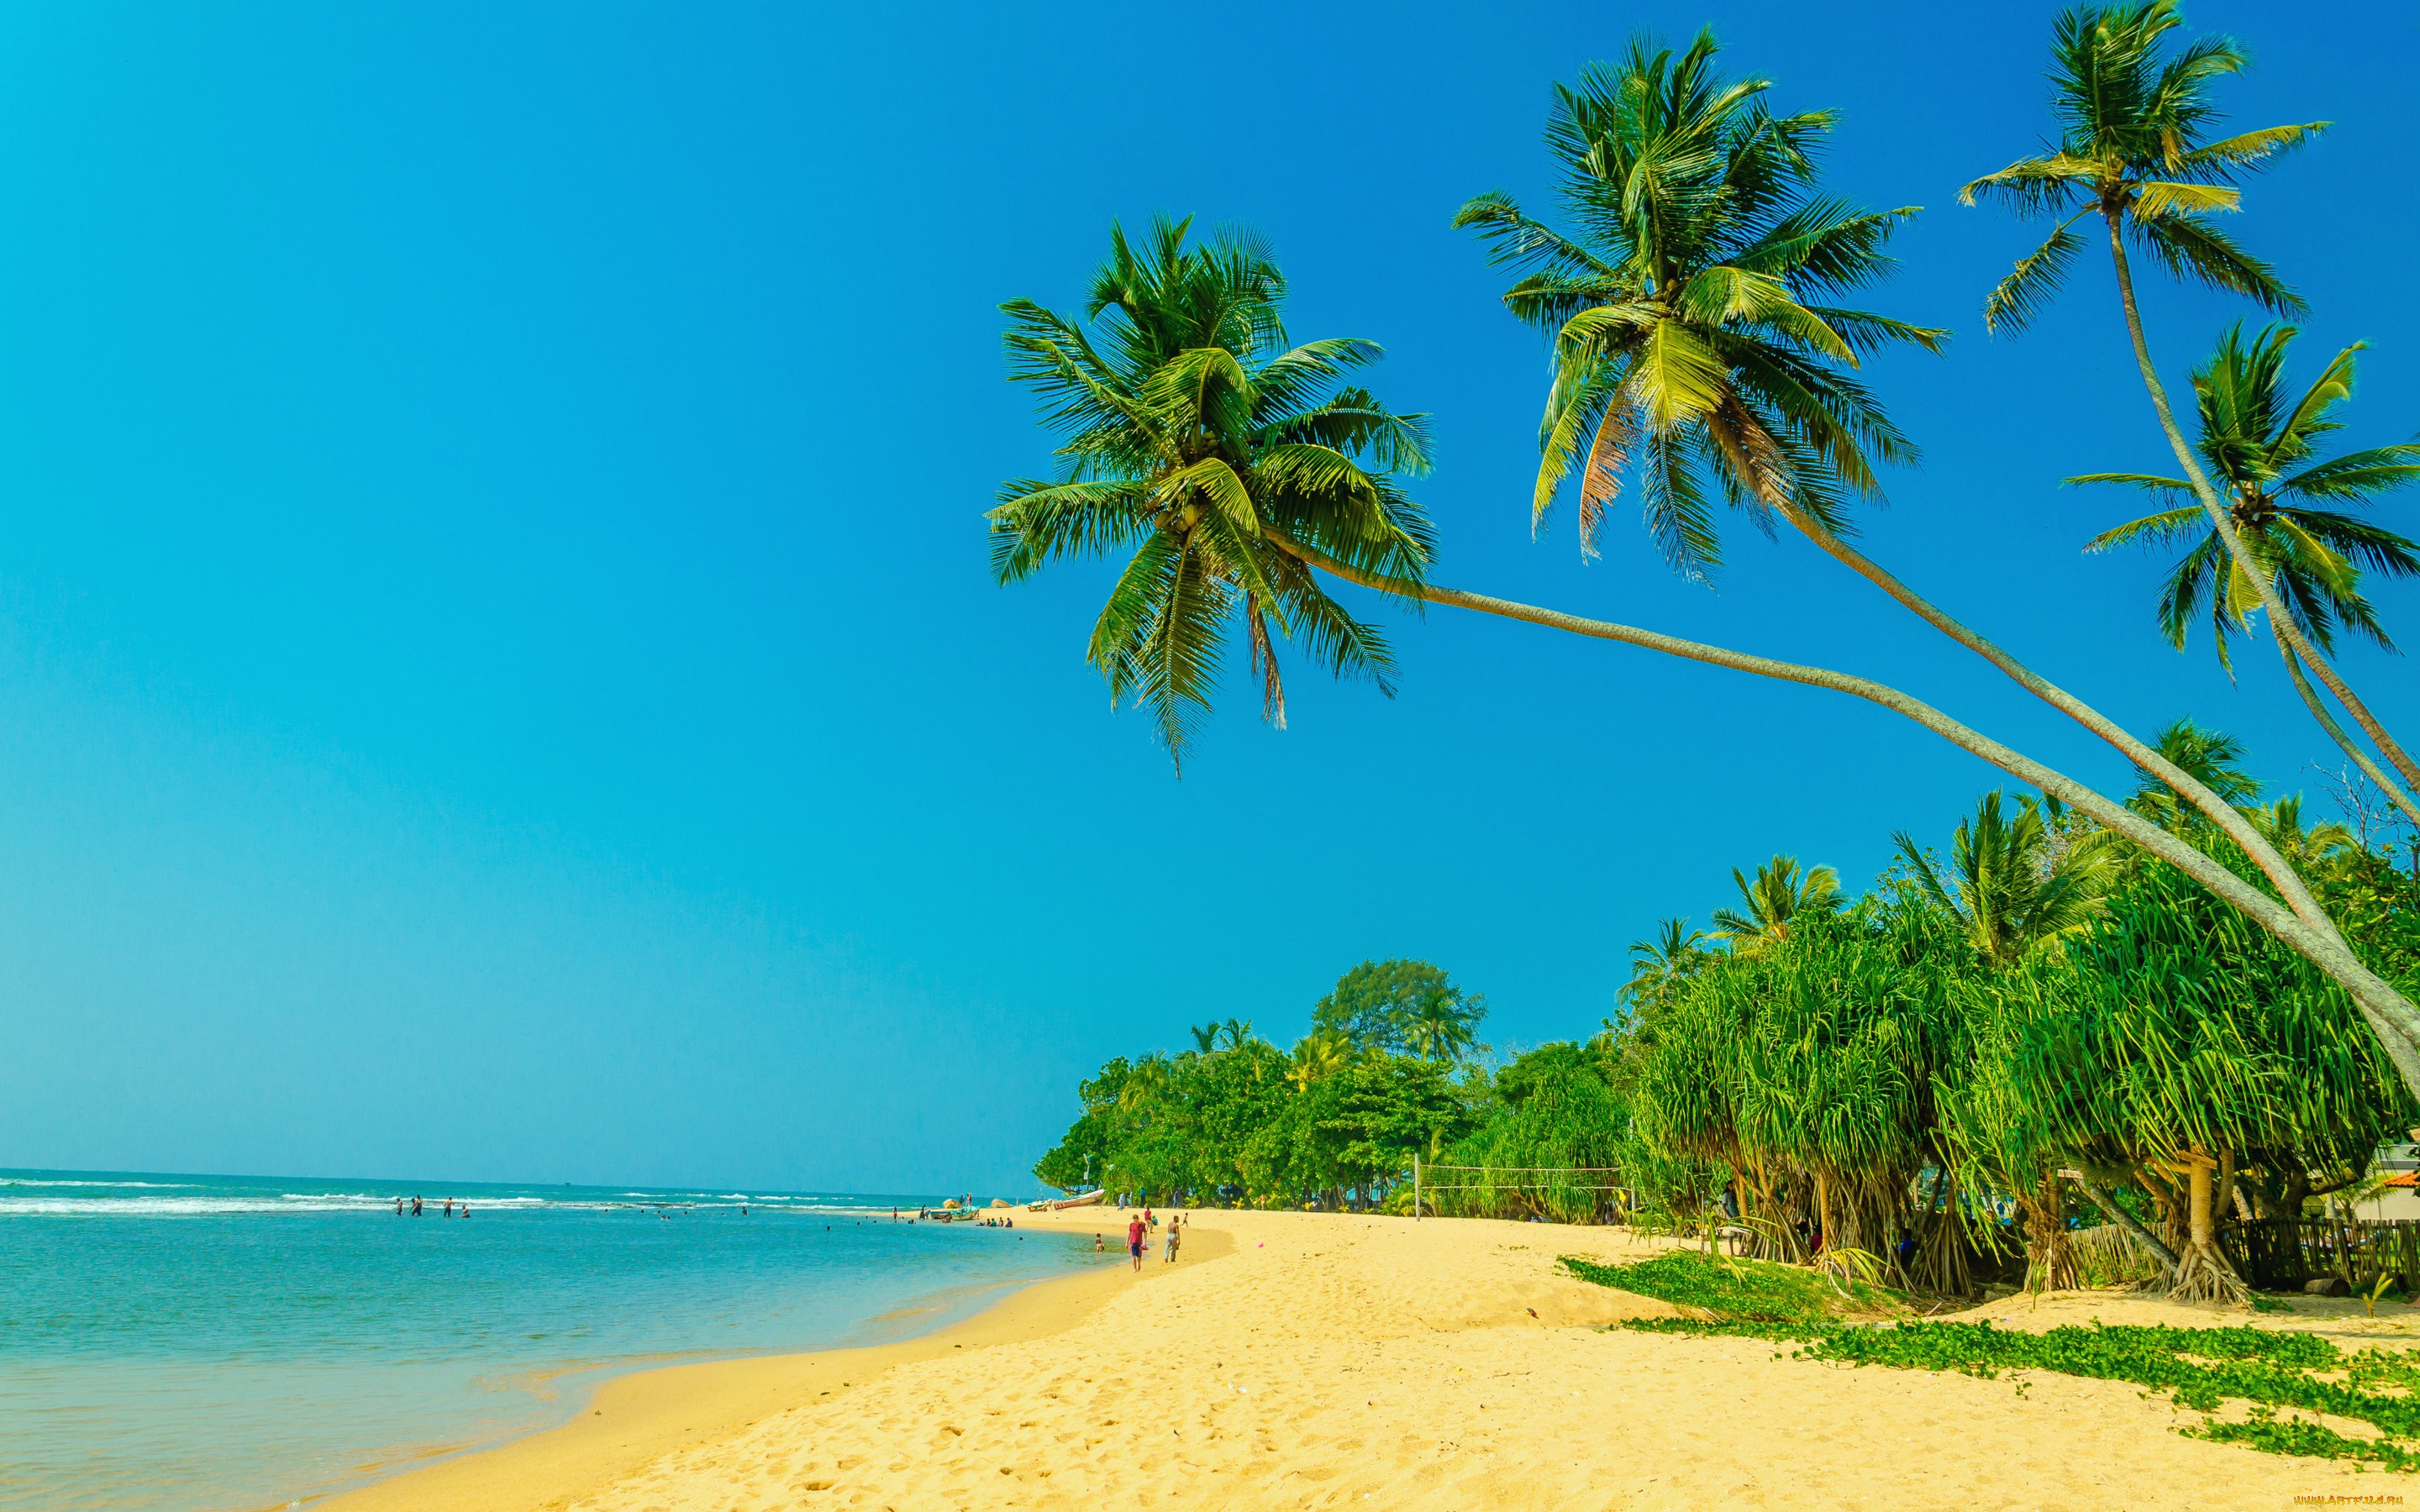 природа, тропики, paradise, пальмы, tropical, sand, beach, summer, песок, shore, берег, море, пляж, palms, sea